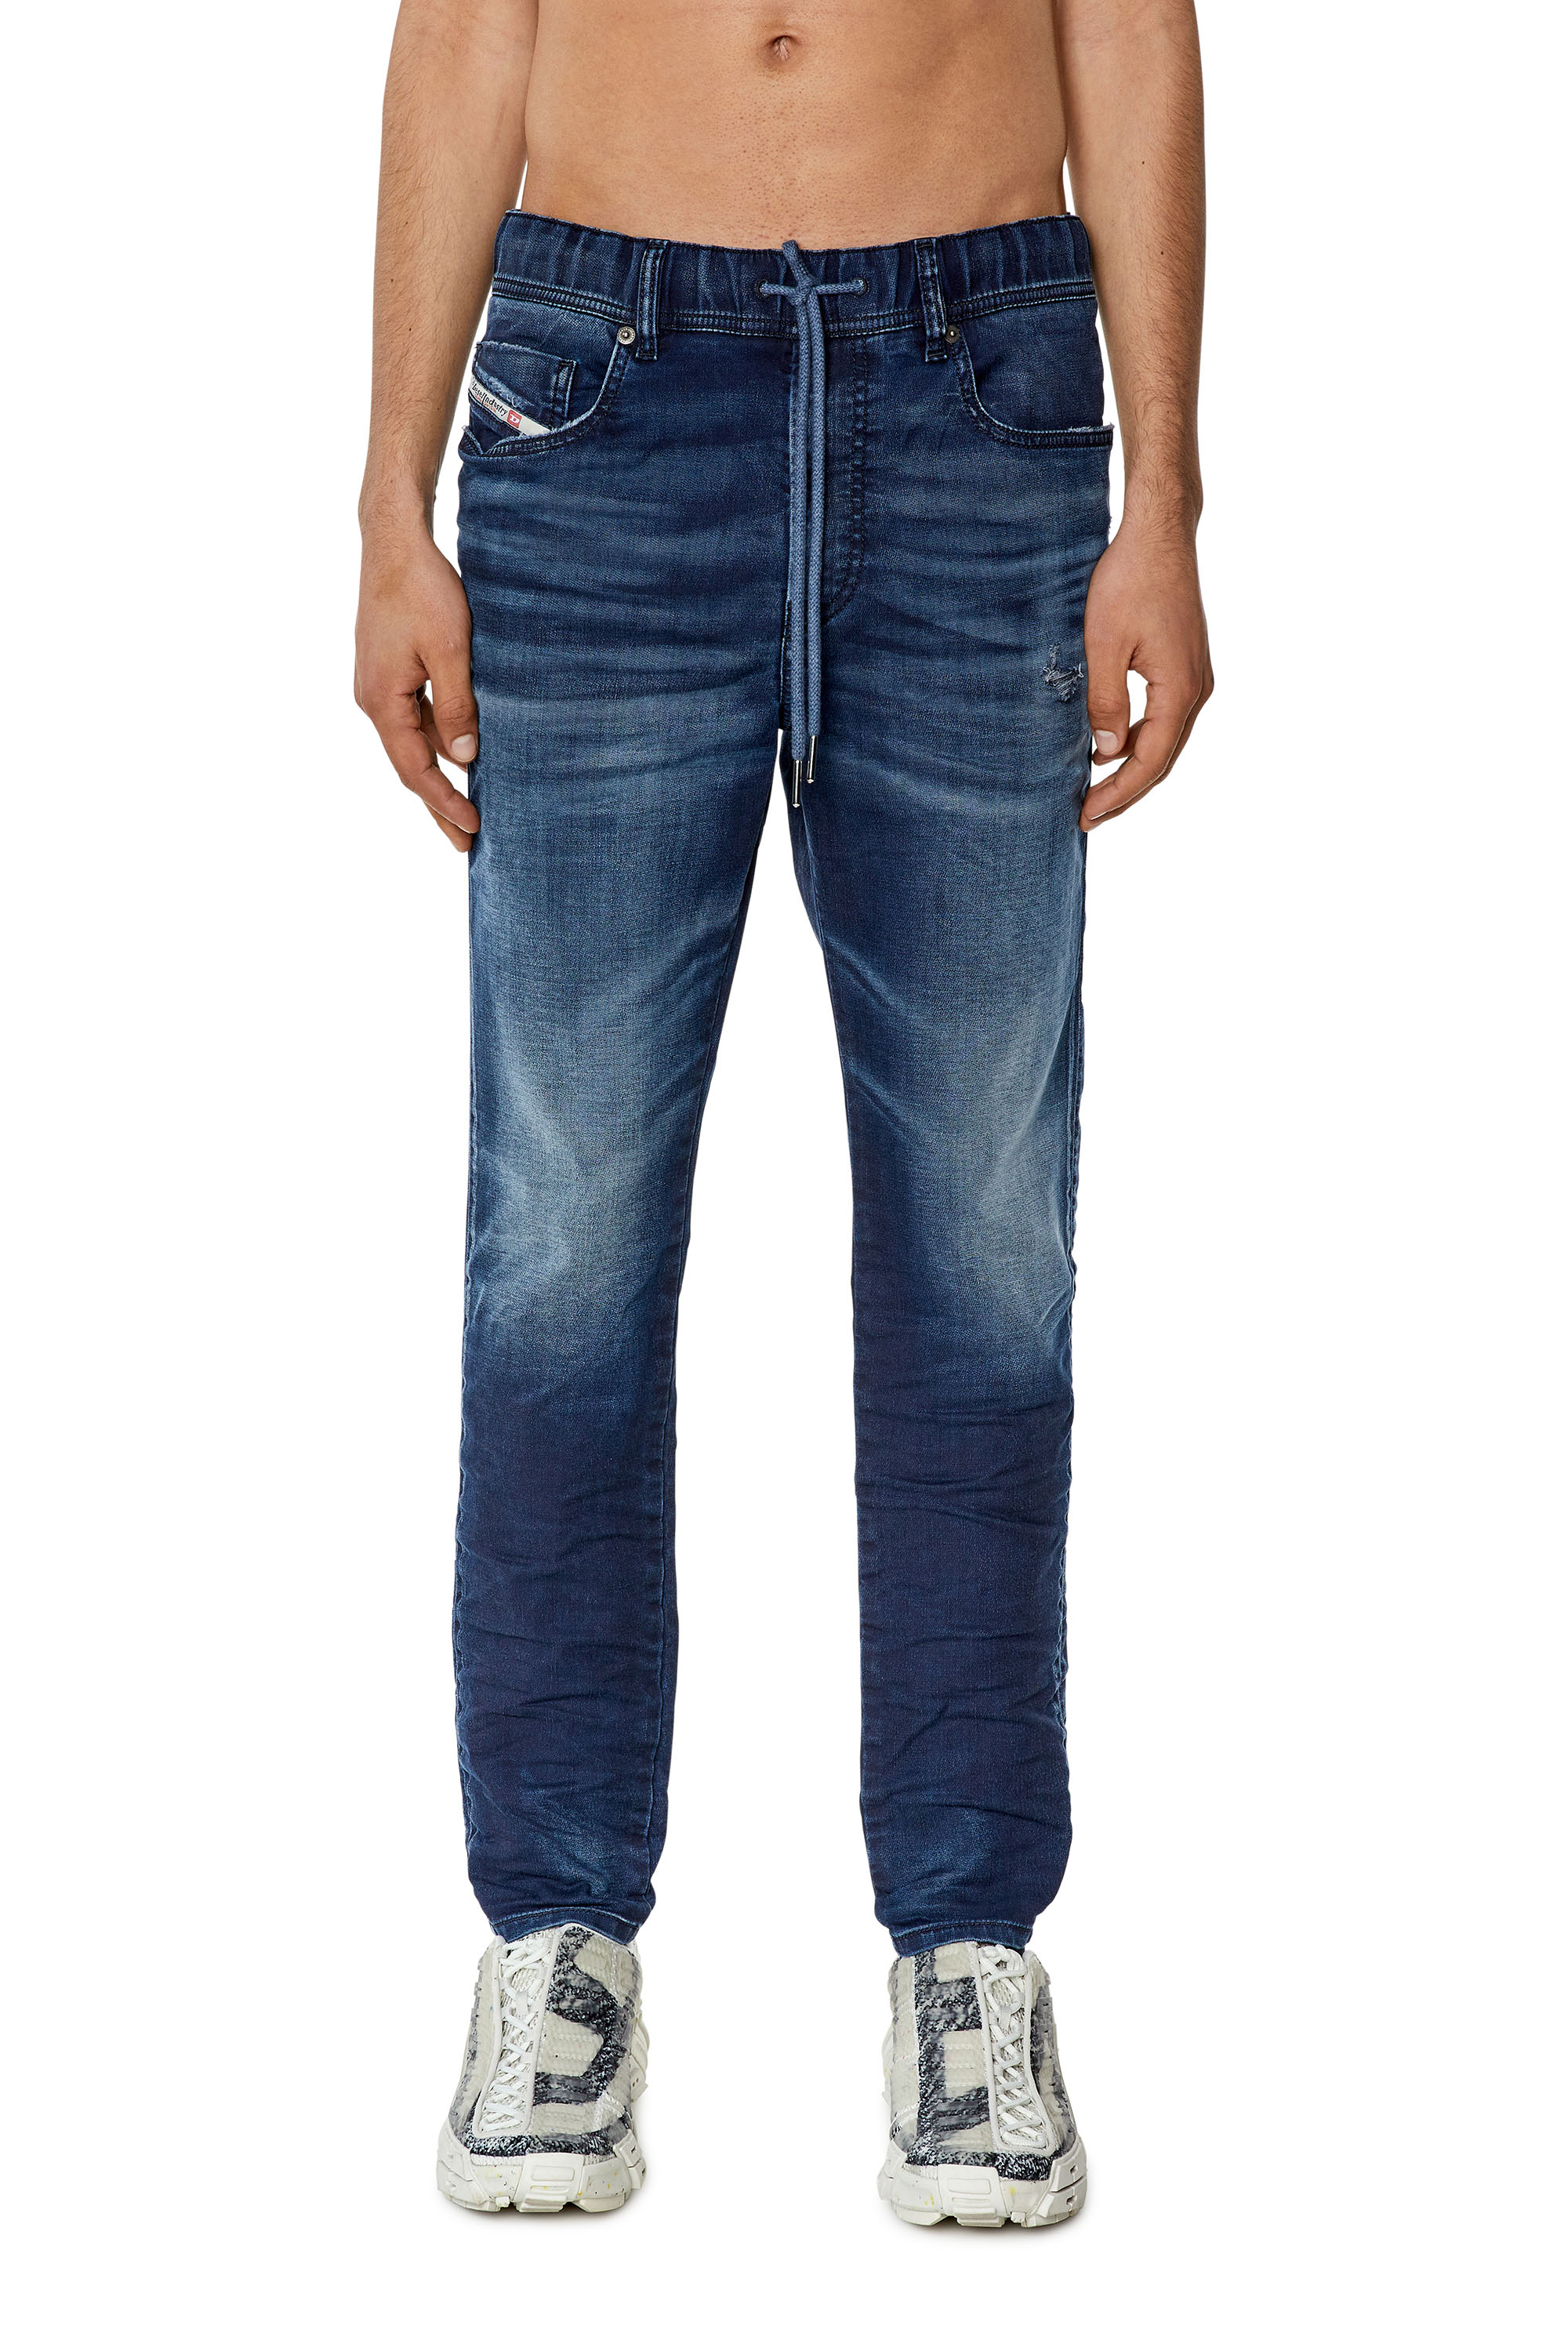 Diesel - Slim E-Spender JoggJeans® 068FQ, Dark Blue - Image 1